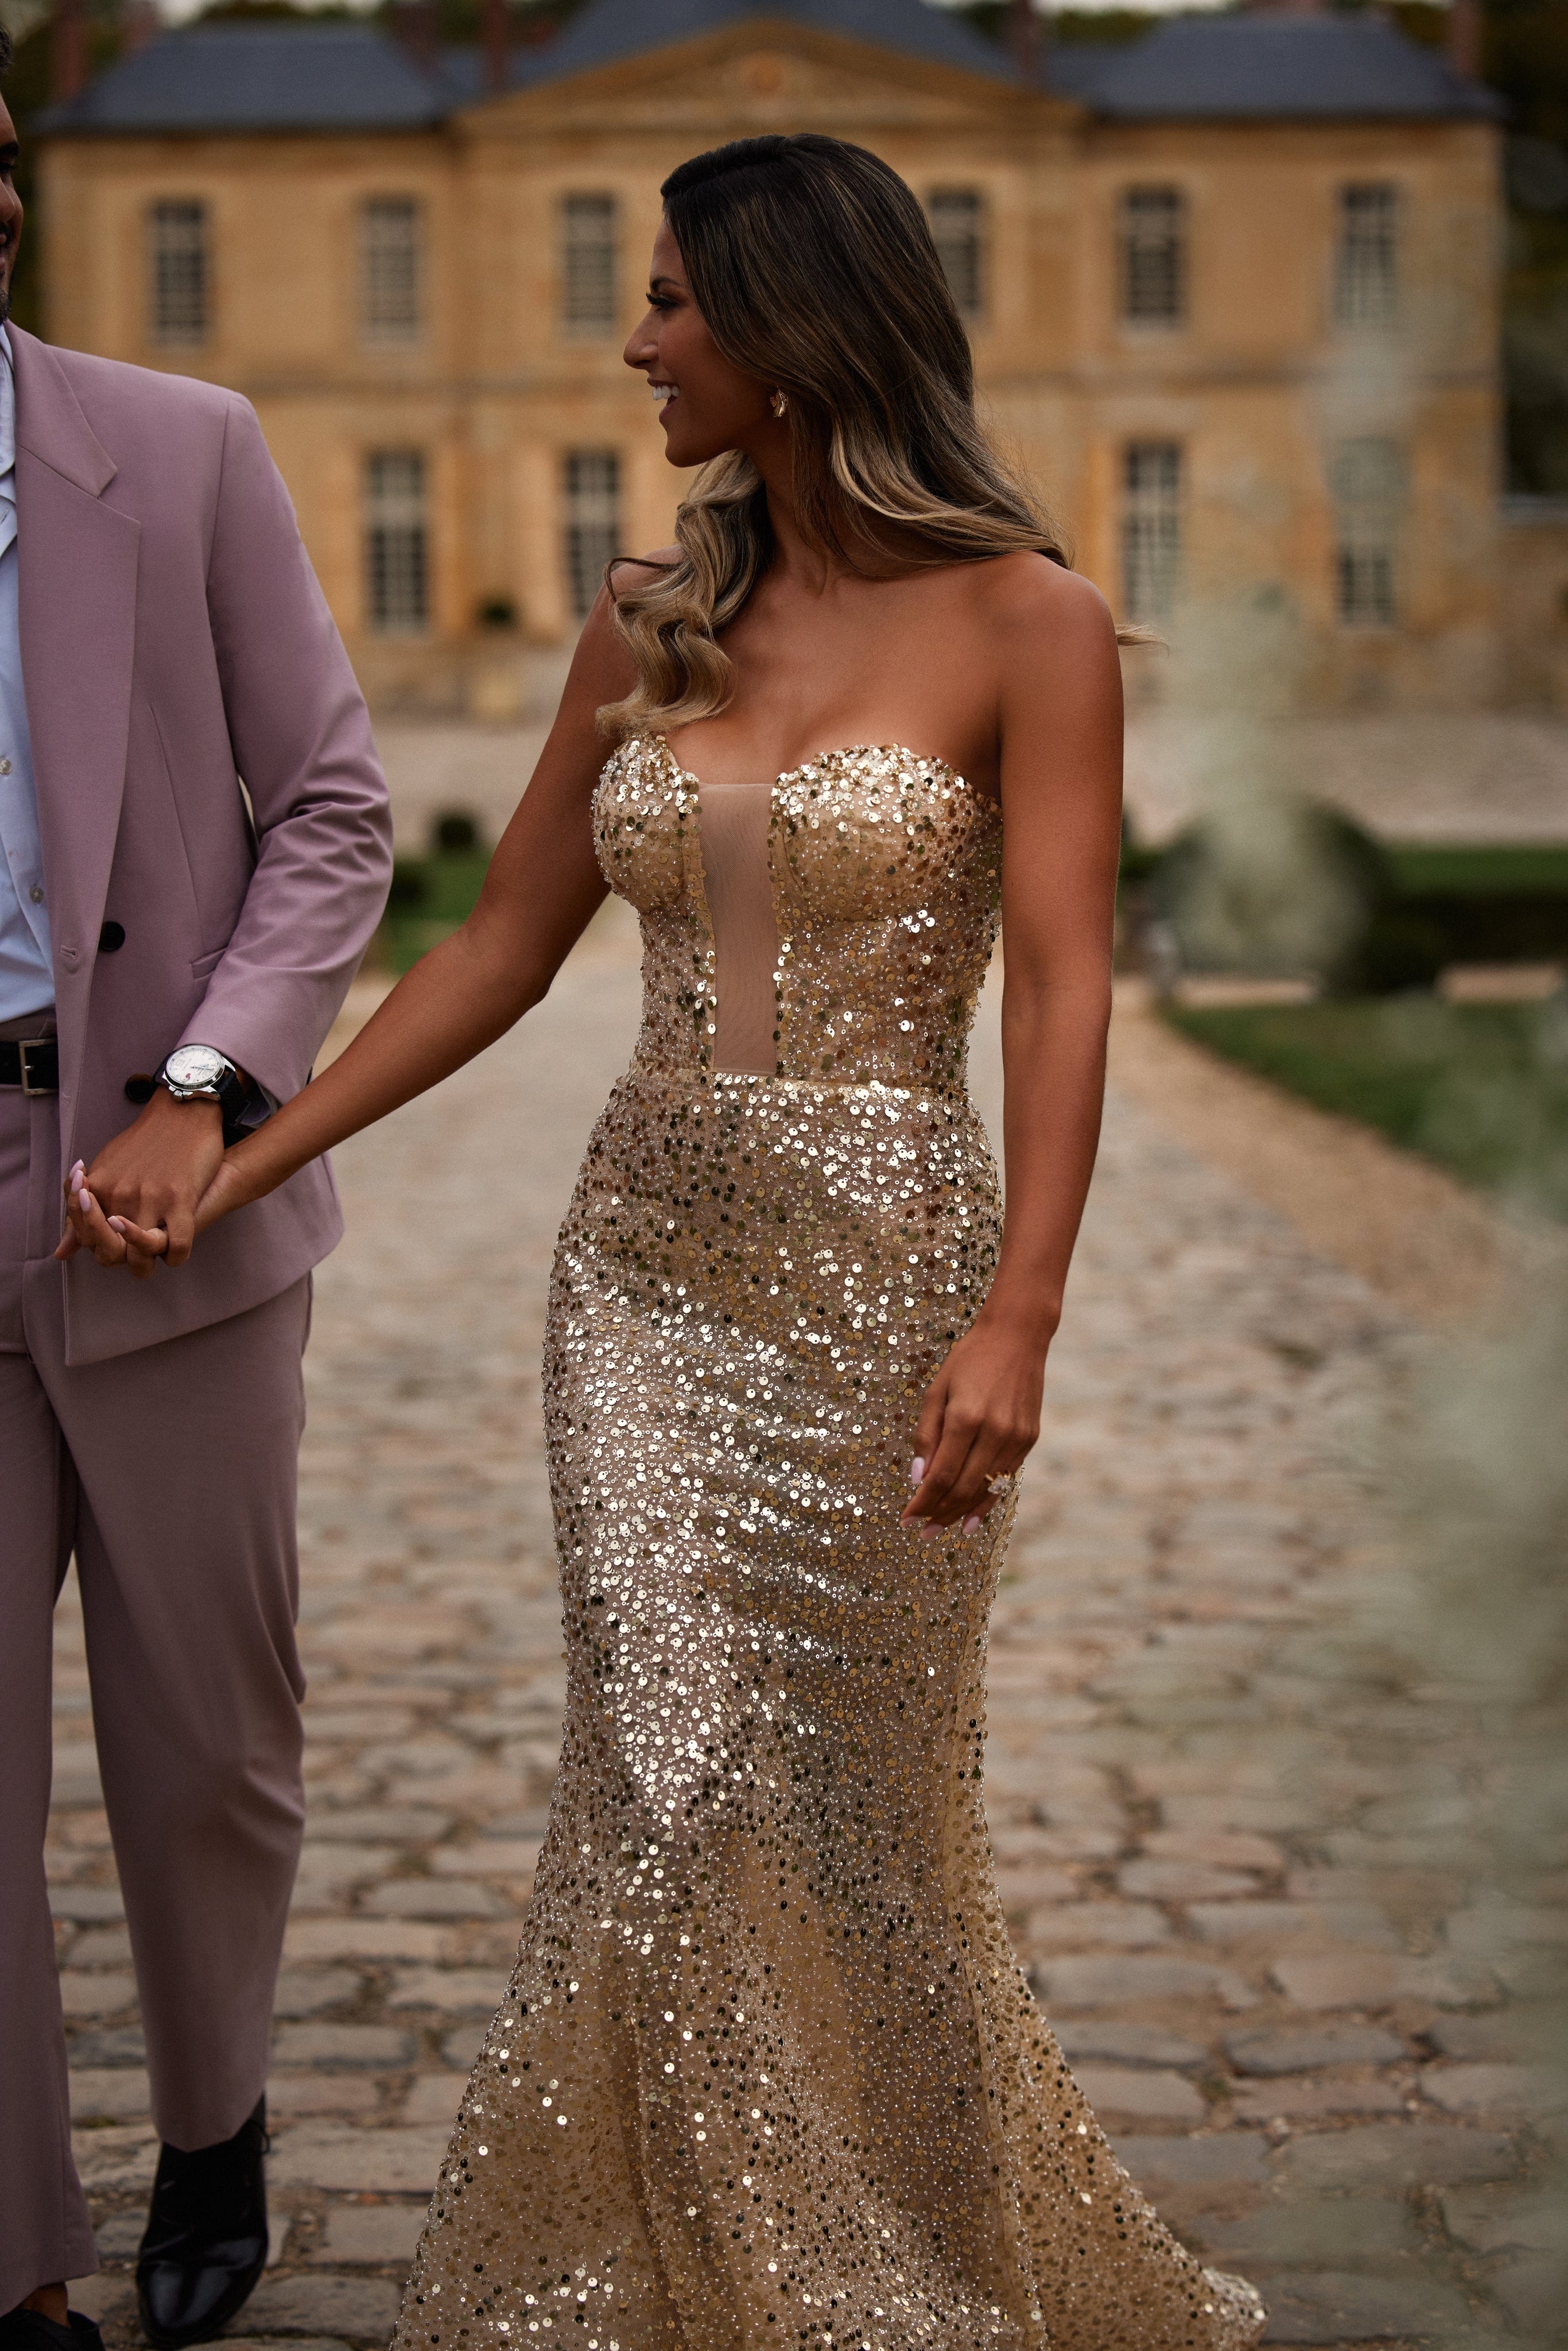 فستان طويل مغطى بالترتر الذهبي